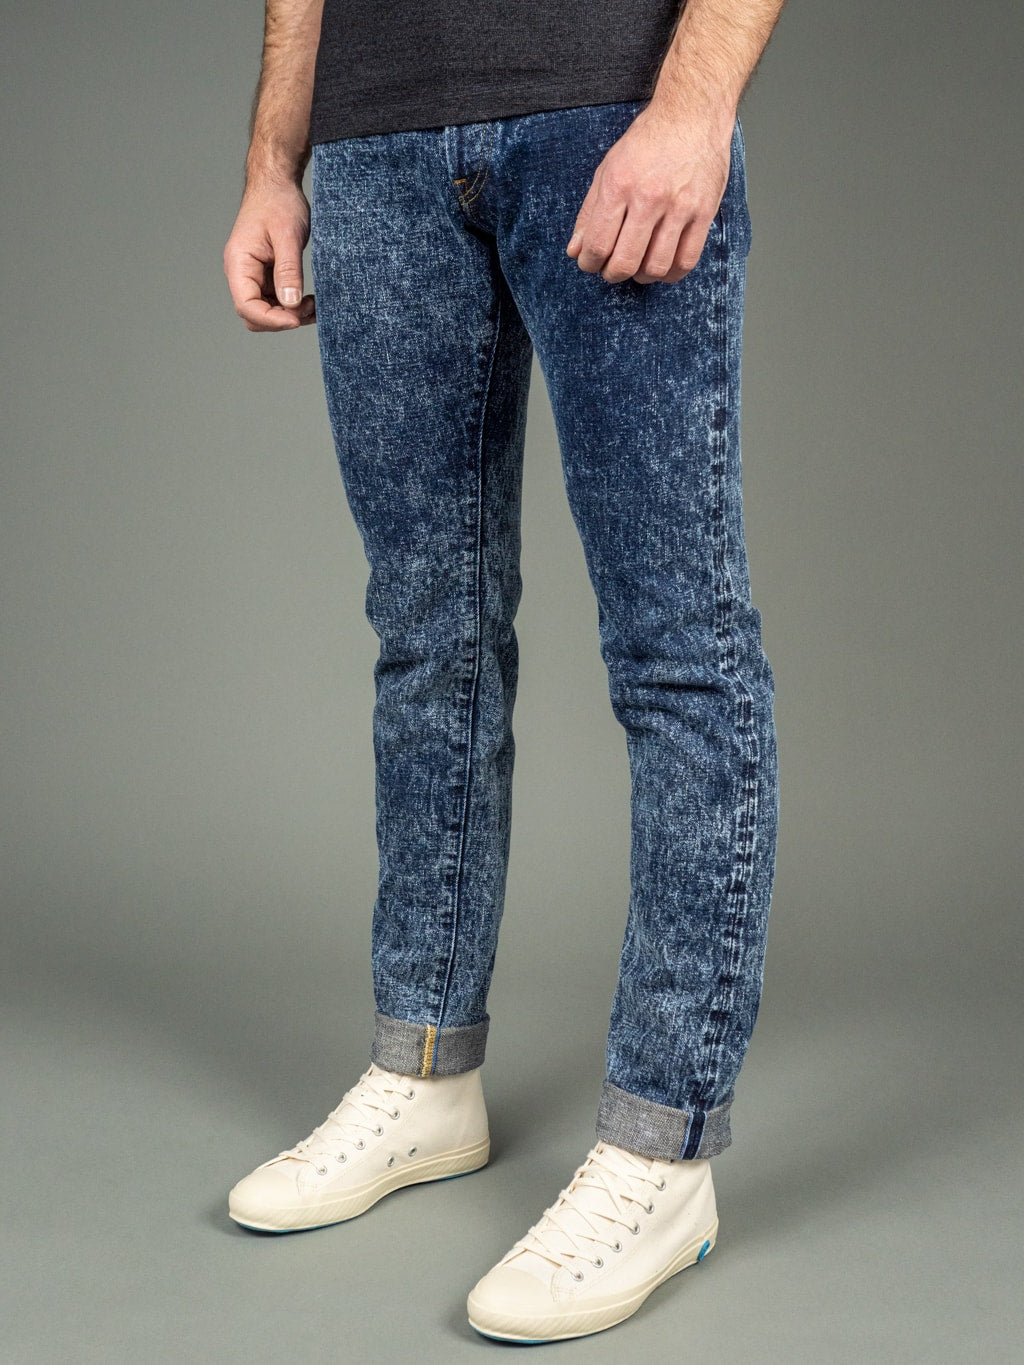 Tanuki Natural Acid Wash High Tapered Jeans Side